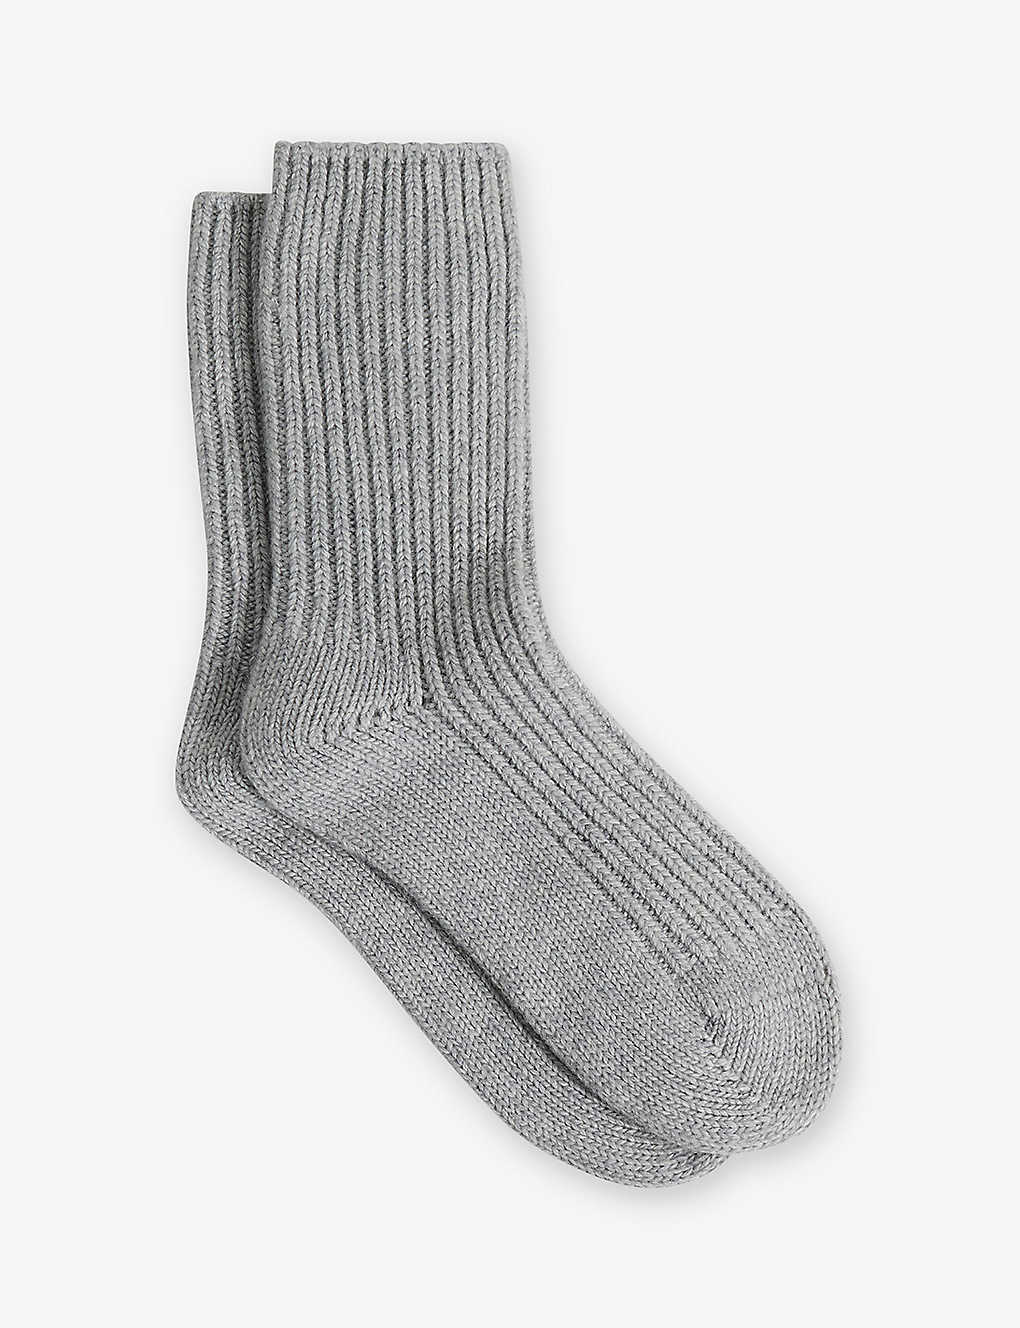 Reiss Carmen - Grey Wool Blend Ribbed Socks, Uk 3-5